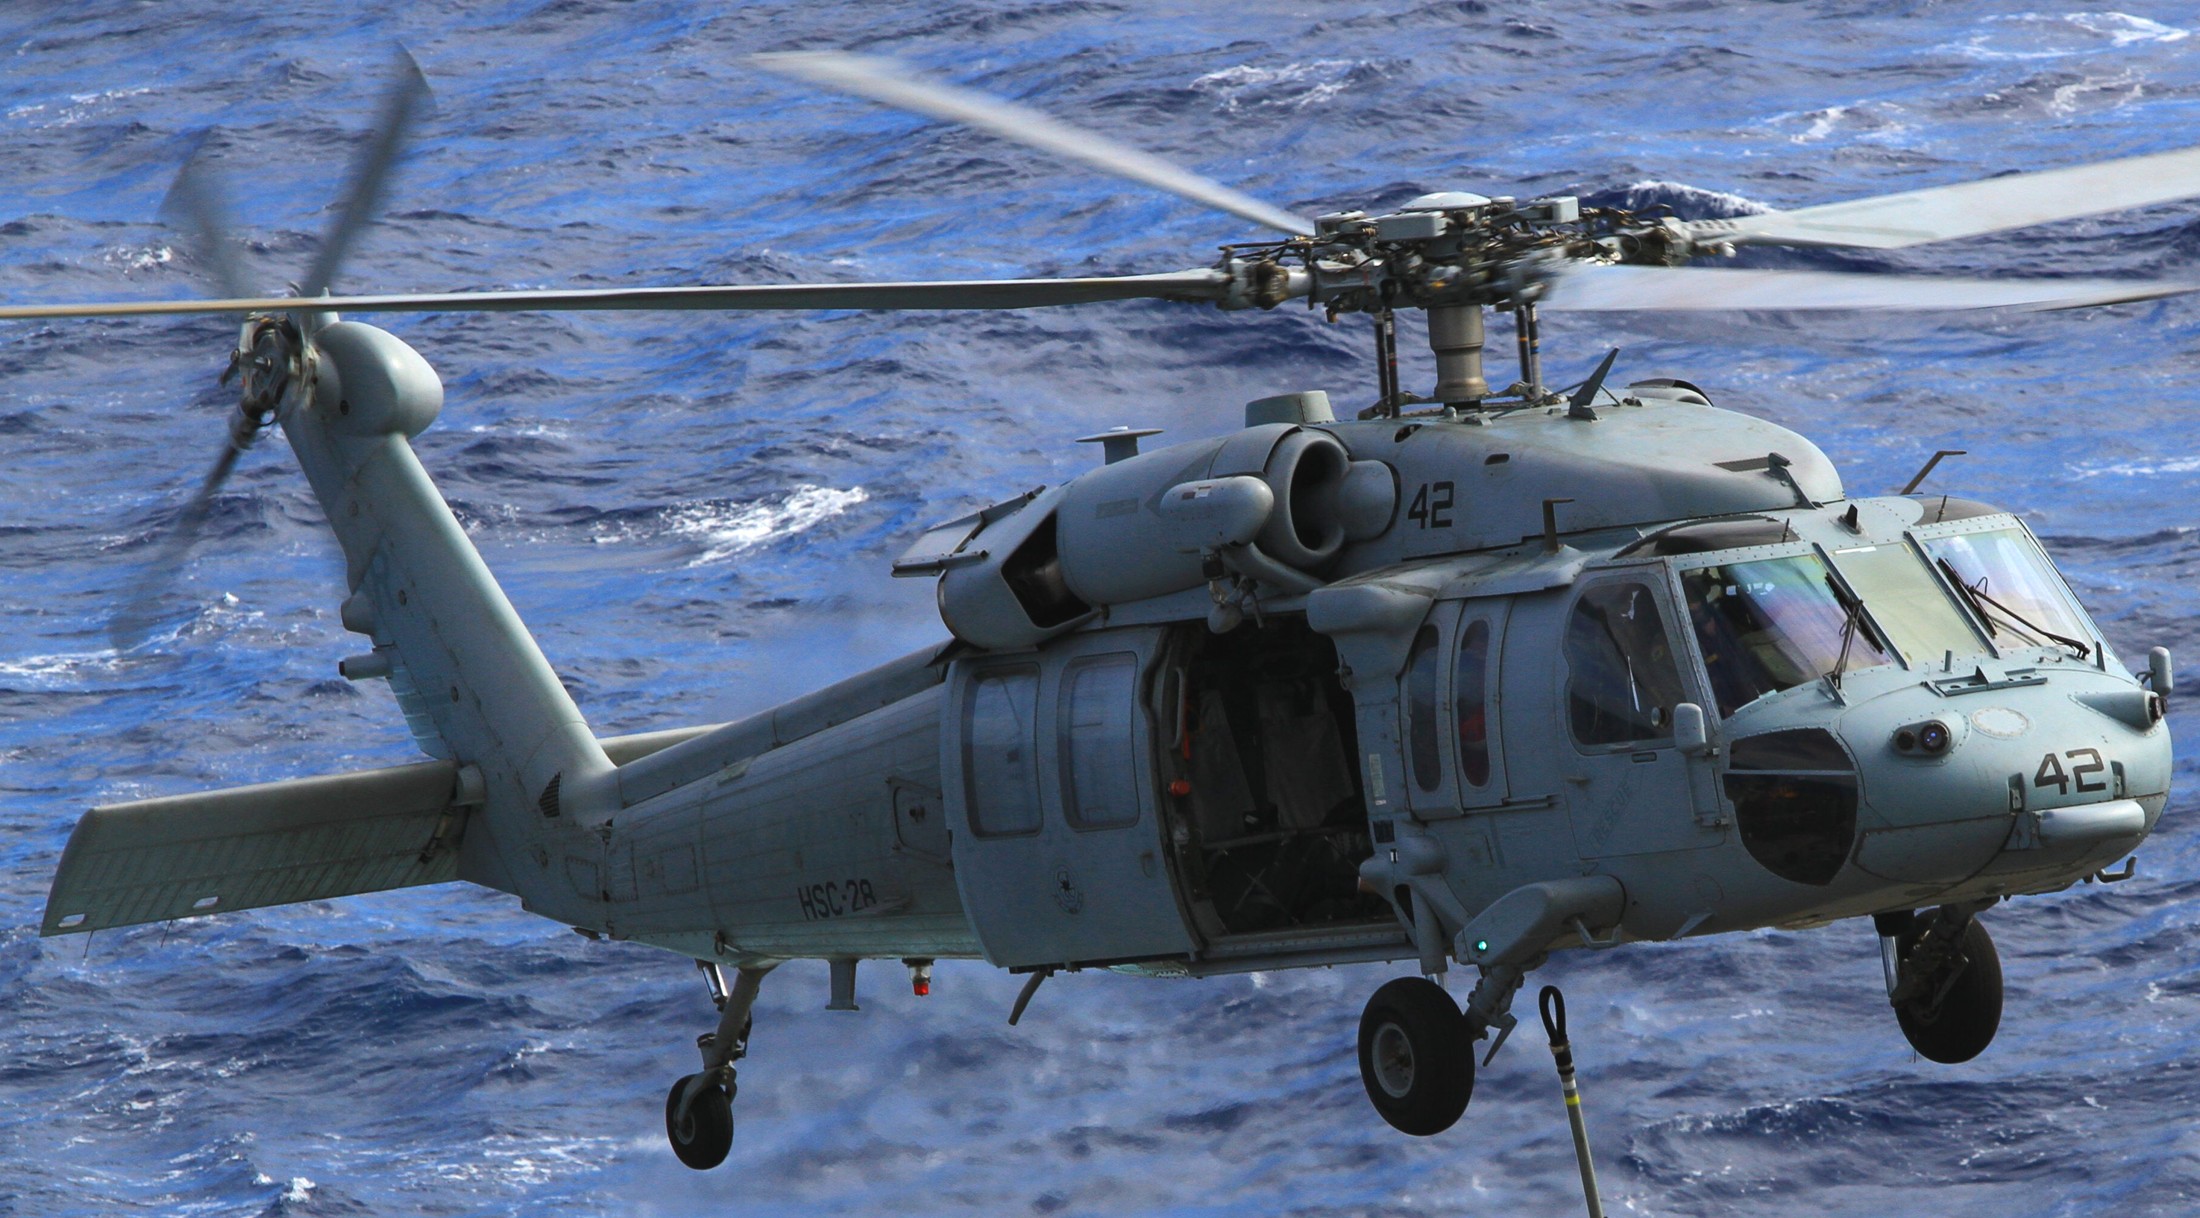 hsc-28 dragon whales helicopter sea combat squadron mh-60s seahawk us navy 105 cvn-65 uss enterprise